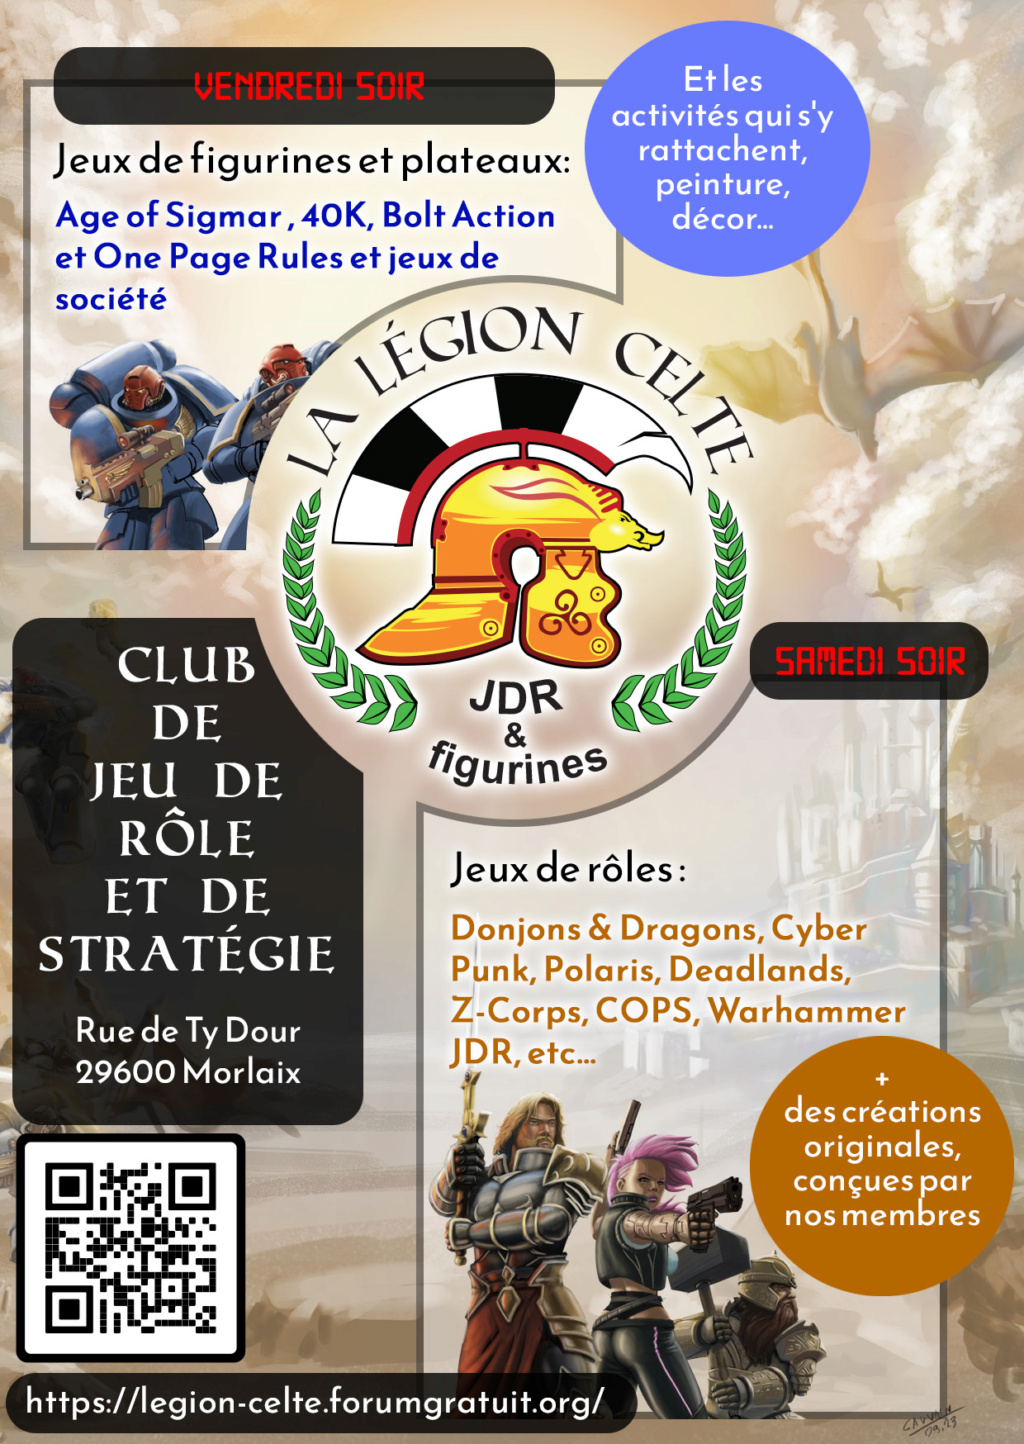 Visuels de communication de la Légion. Flyer_15